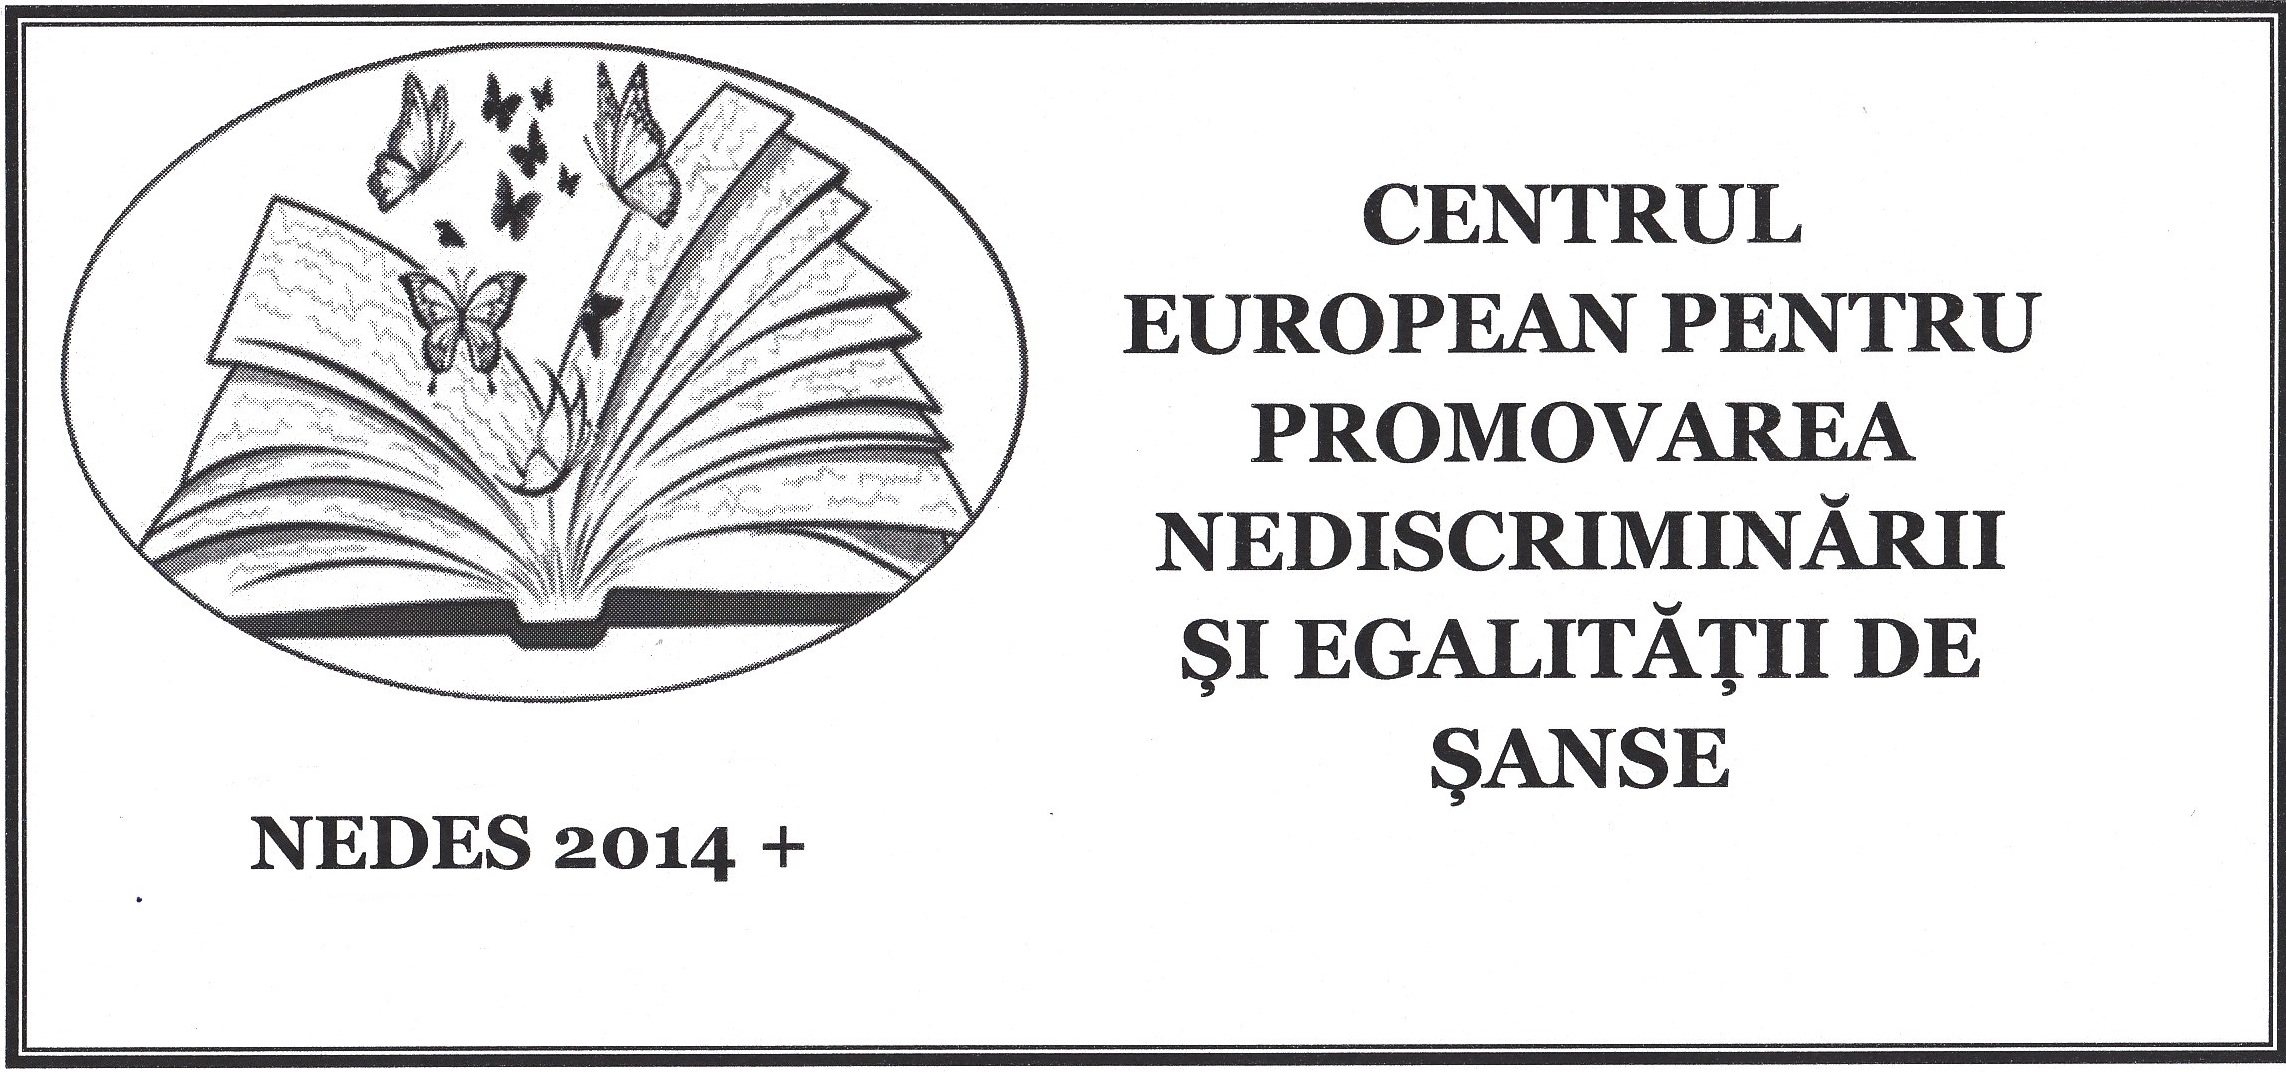 CENTRUL EUROPEAN PENTRU PROMOVAREA NEDISCRIMINARII ȘI EGALITATII DE SANSE-NEDES 2014+ logo